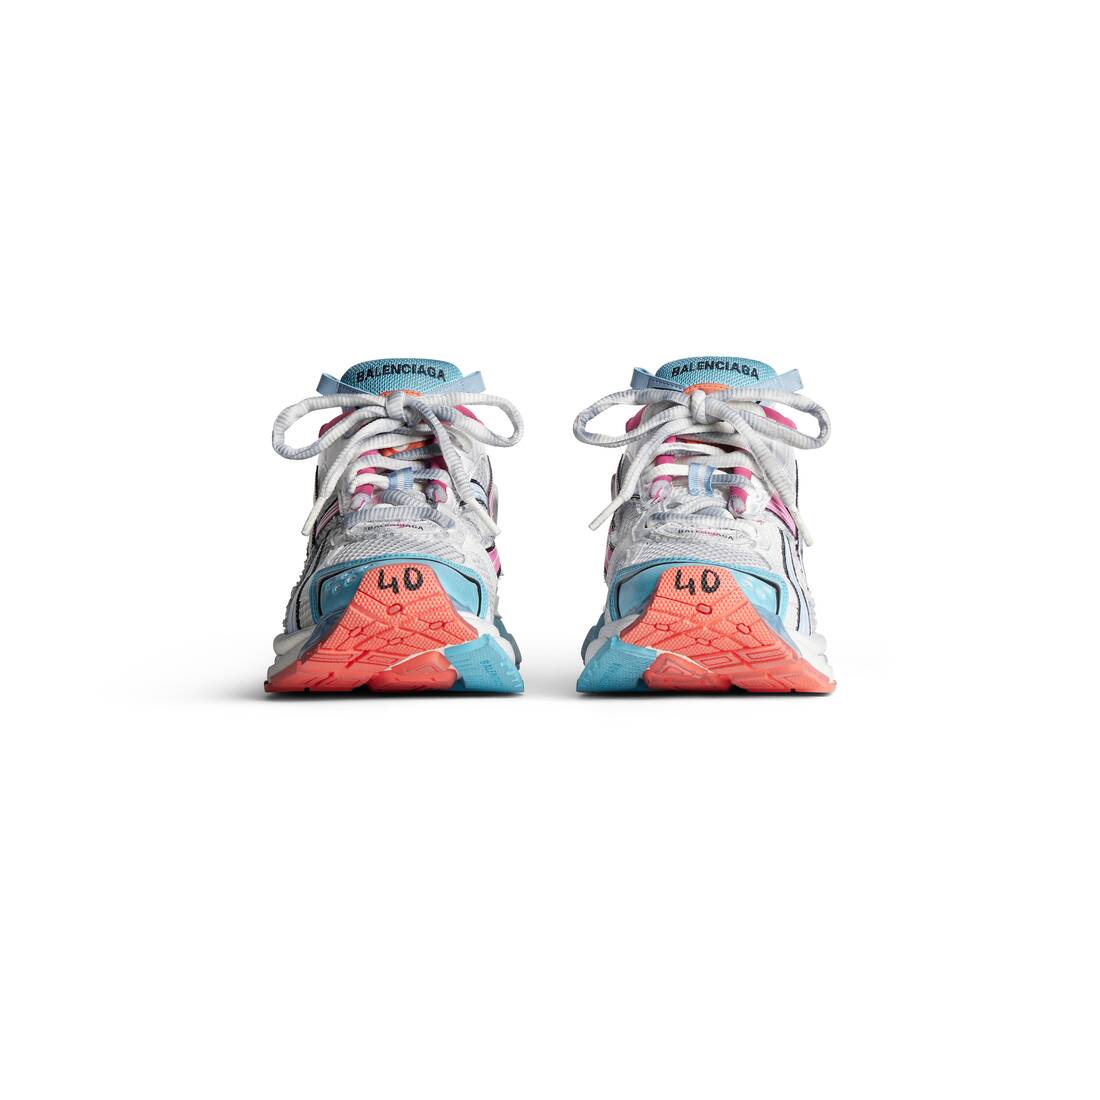 Women's Runner Sneaker in White/blue/pink/orange